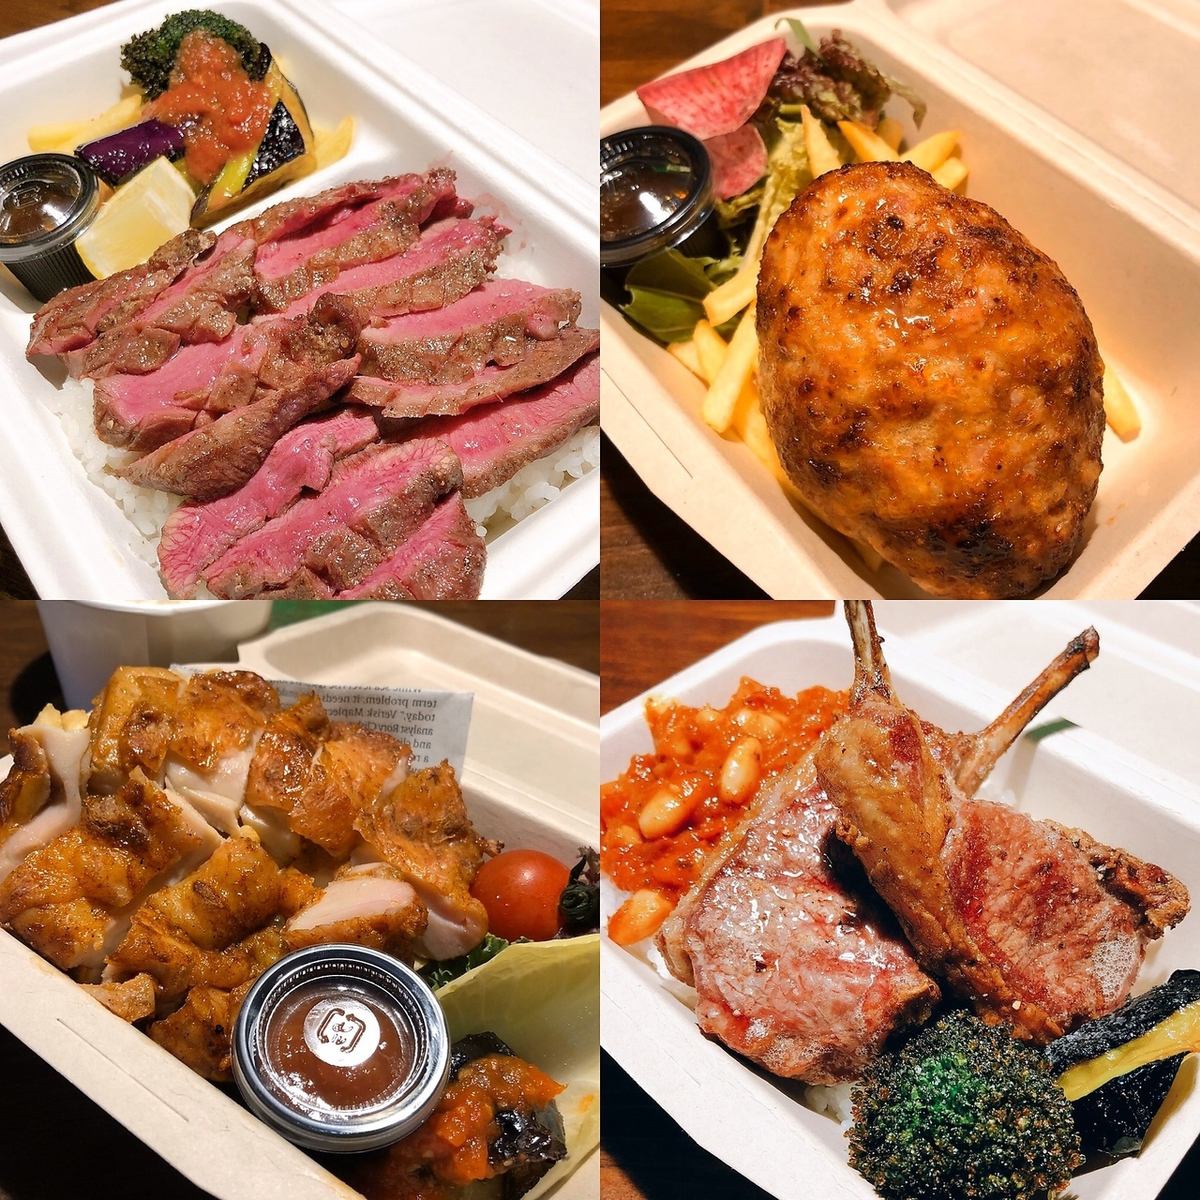 시모키타자와 역 5 분 ♪ 정육점 직영으로 다양한 고기 요리 이야기와 술이 진행합니다! 데이트, 식사, 연회